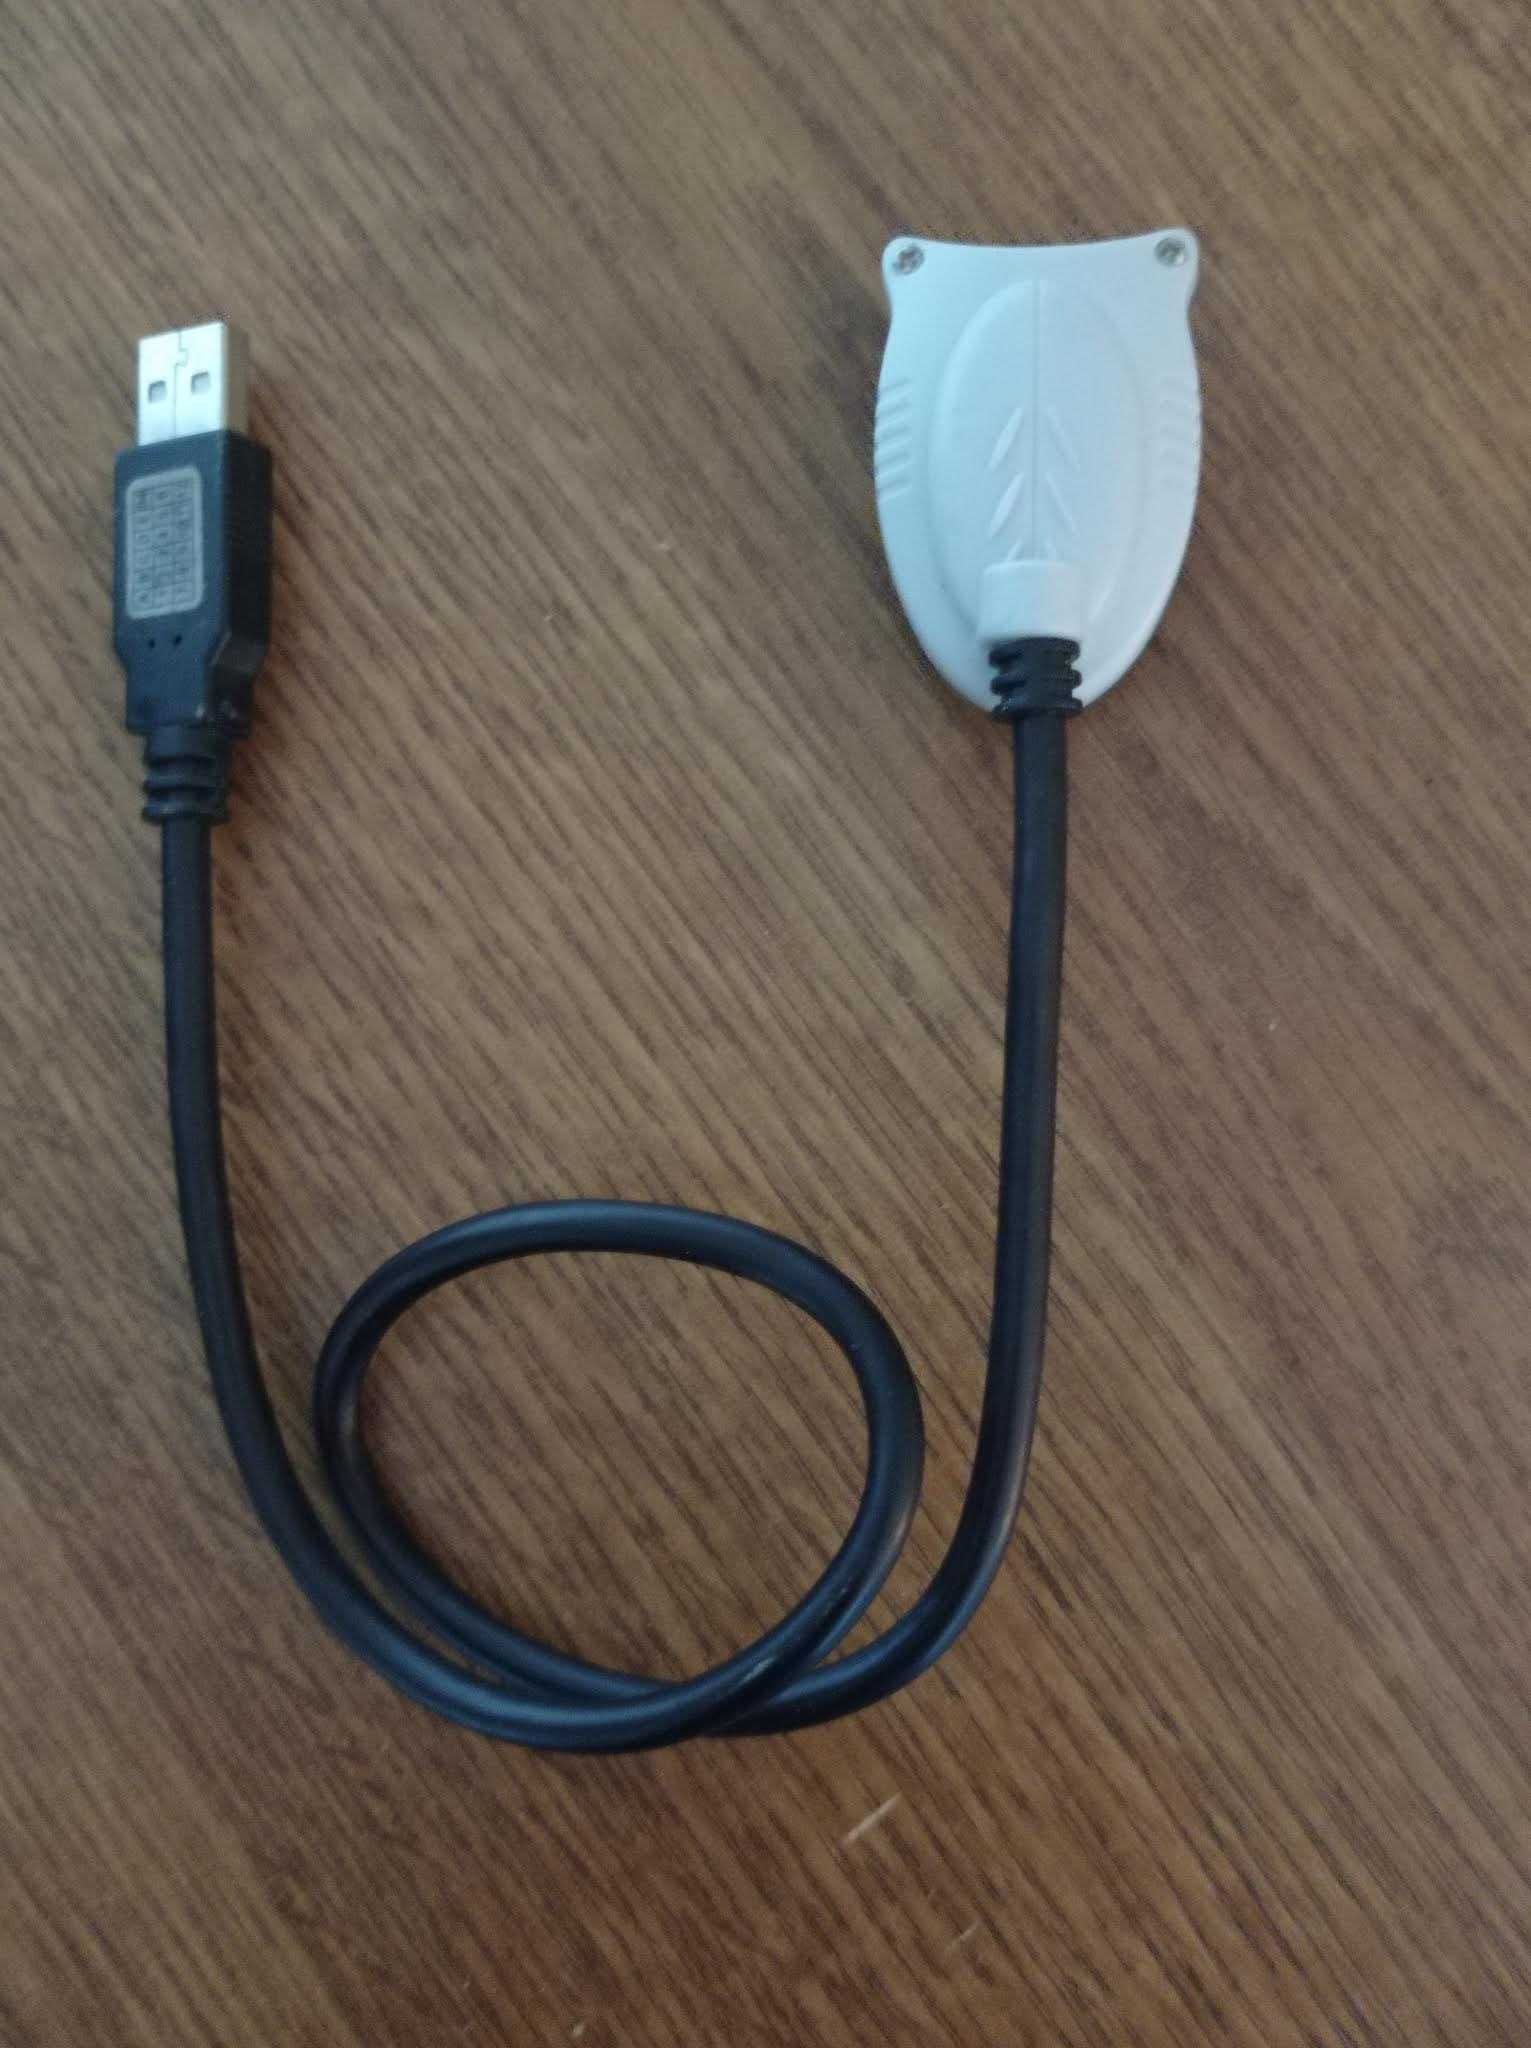 Minicamera USB pentru PC sau laptop